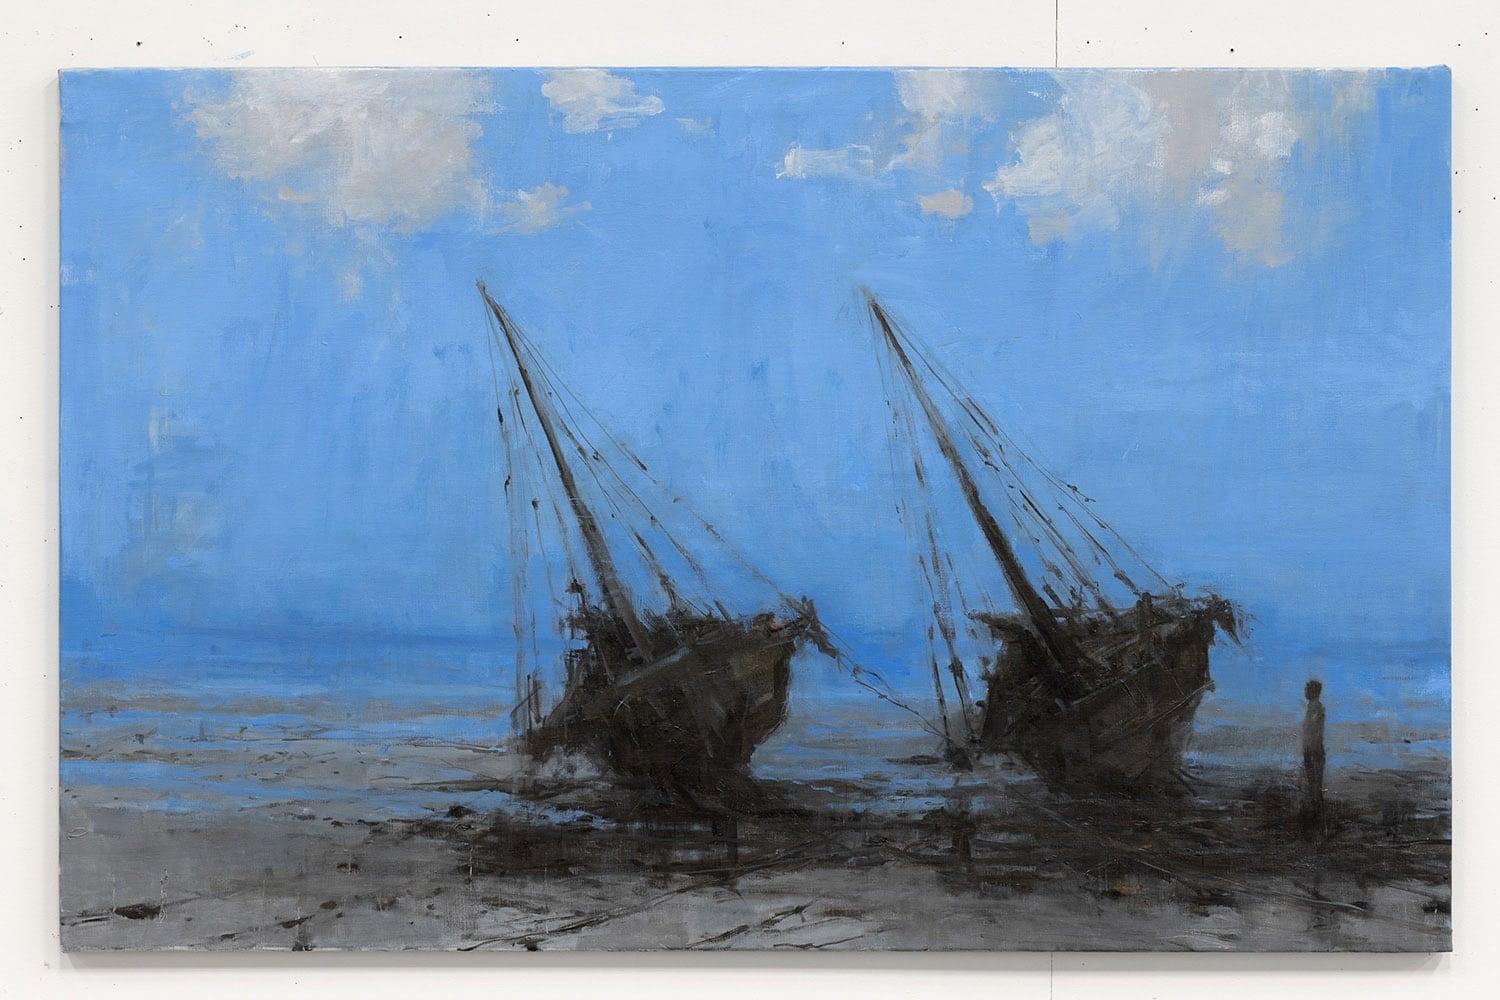 Barcas en Bagamoyo IV by Calo Carratalá - Seascape painting, blue colours, boats For Sale 2